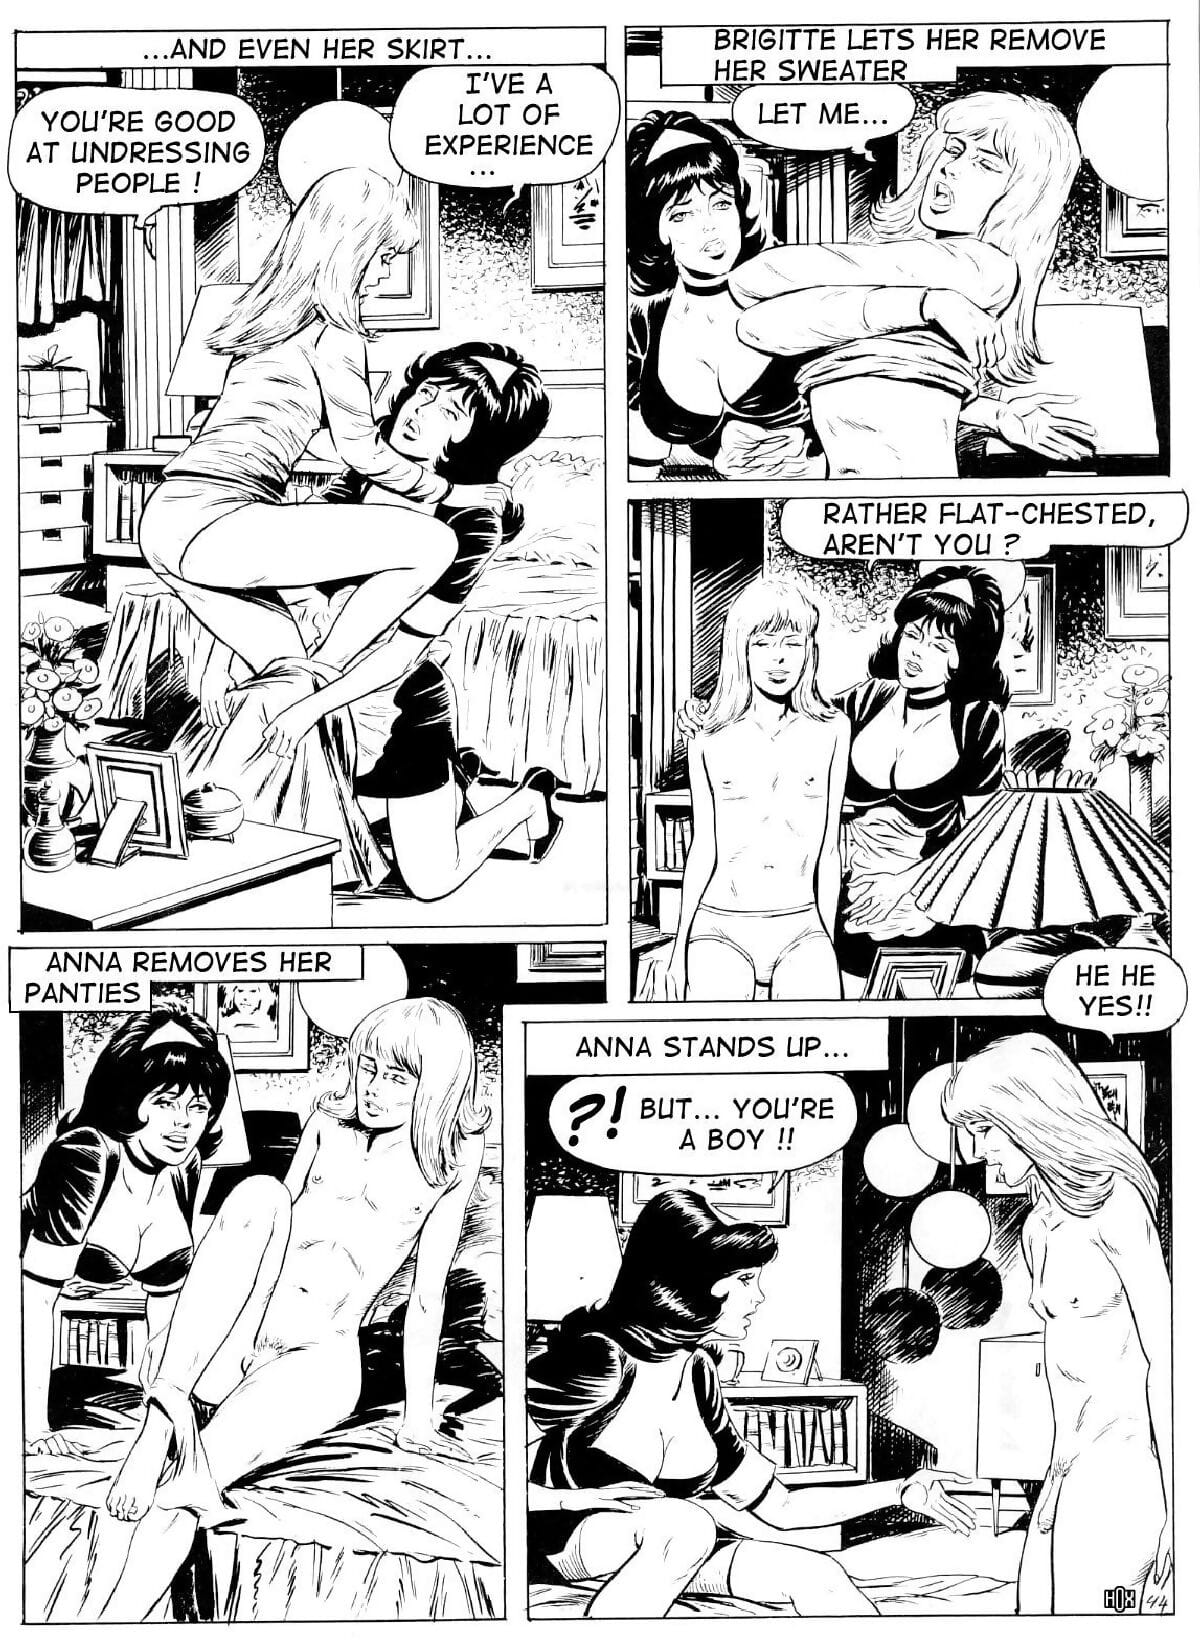 Brigitte De Luxe Maid #2 - part 2 page 1